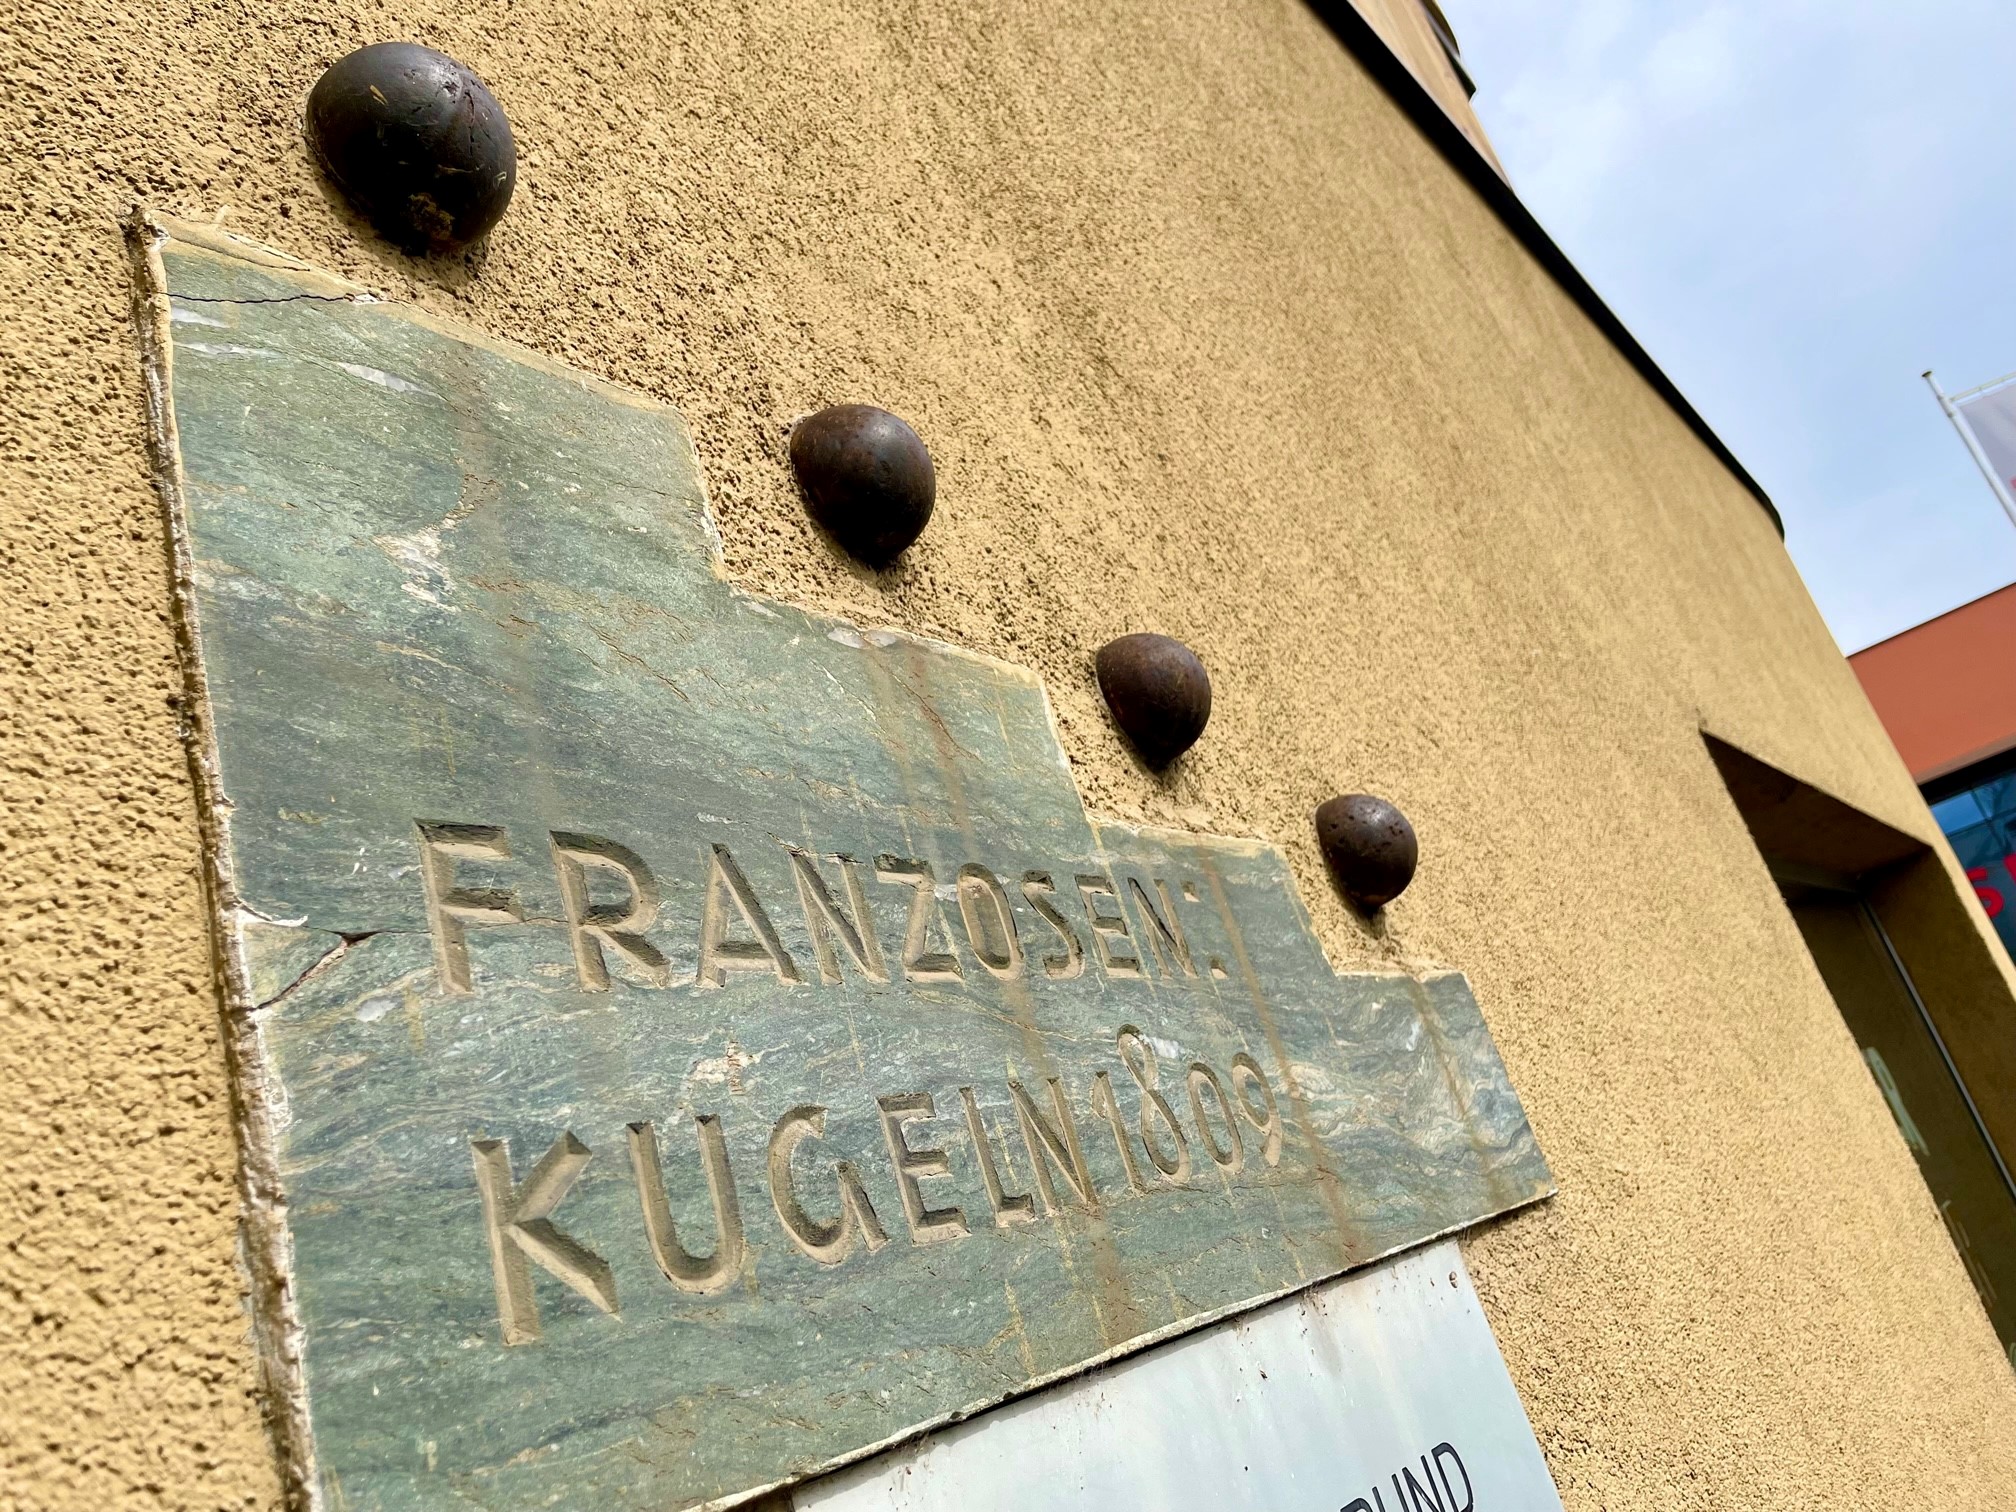 Hausfassade St. Veiter Straße Ecke Heuplatz, in der laut Inschrift vier Franzosenkugeln aus 1809 stecken